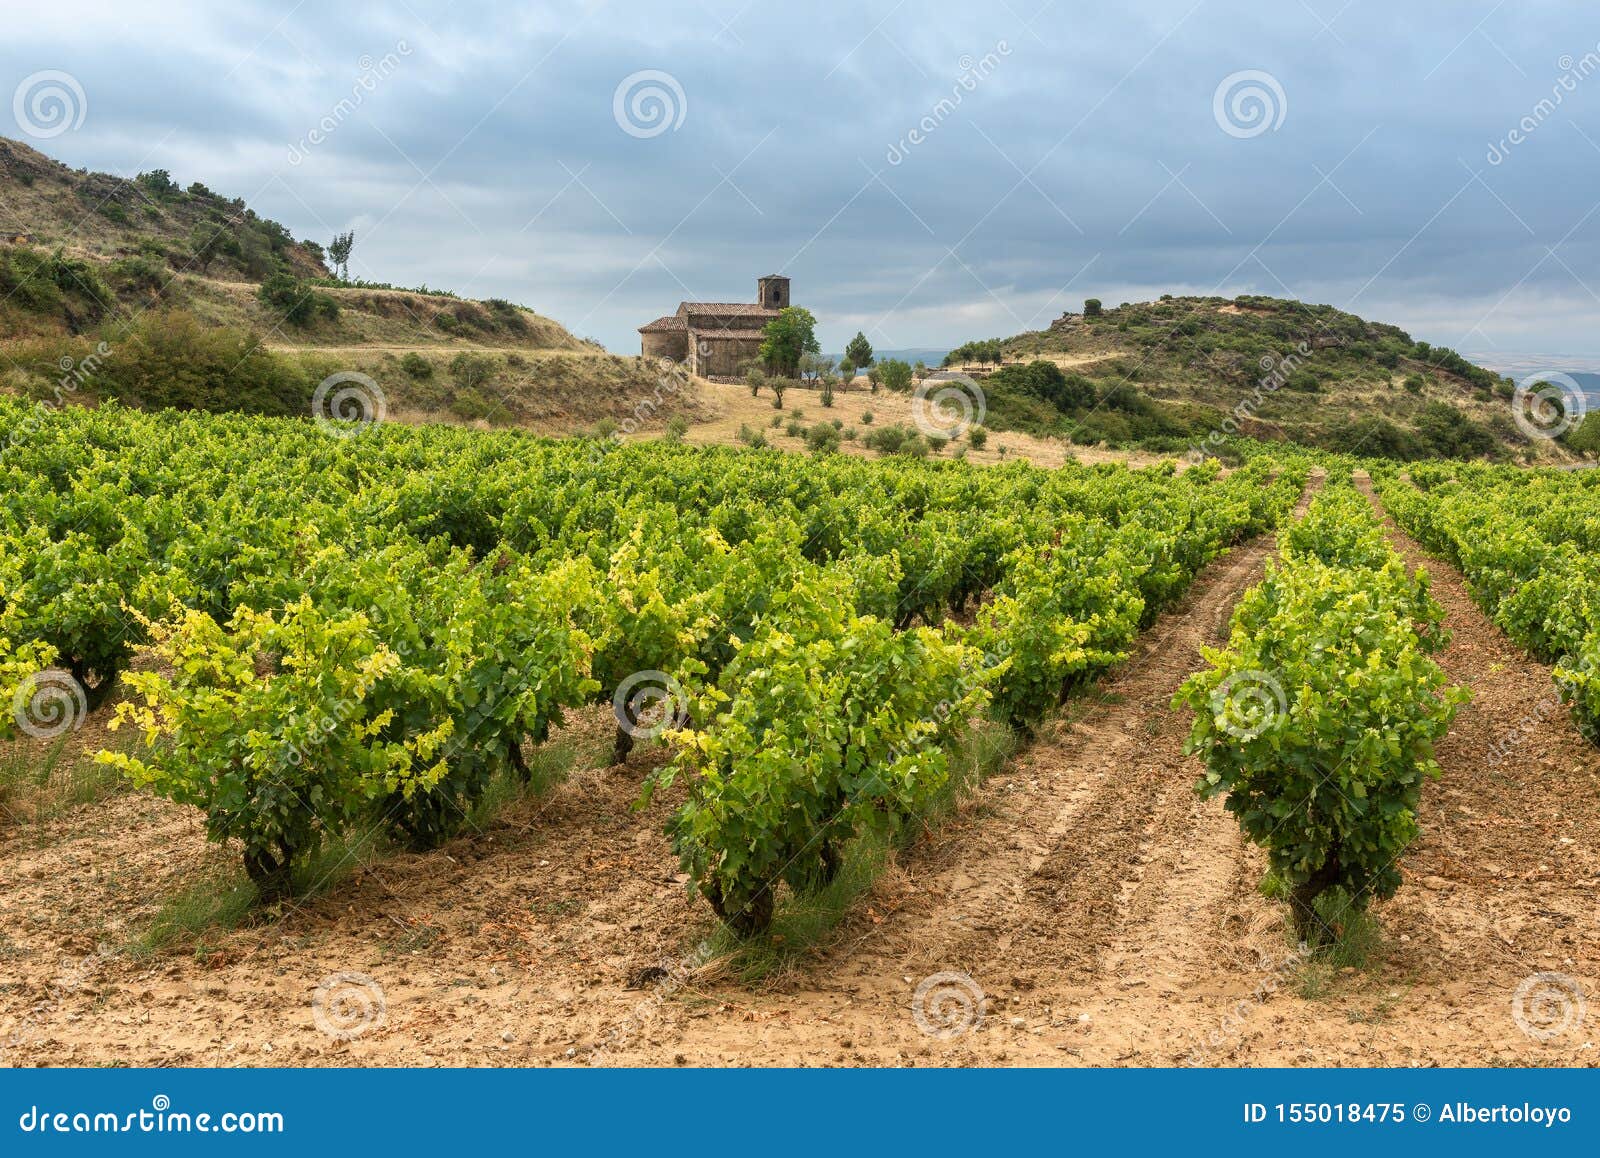 vineyards in summer with santa maria de la piscina chapel as background, la rioja, spain